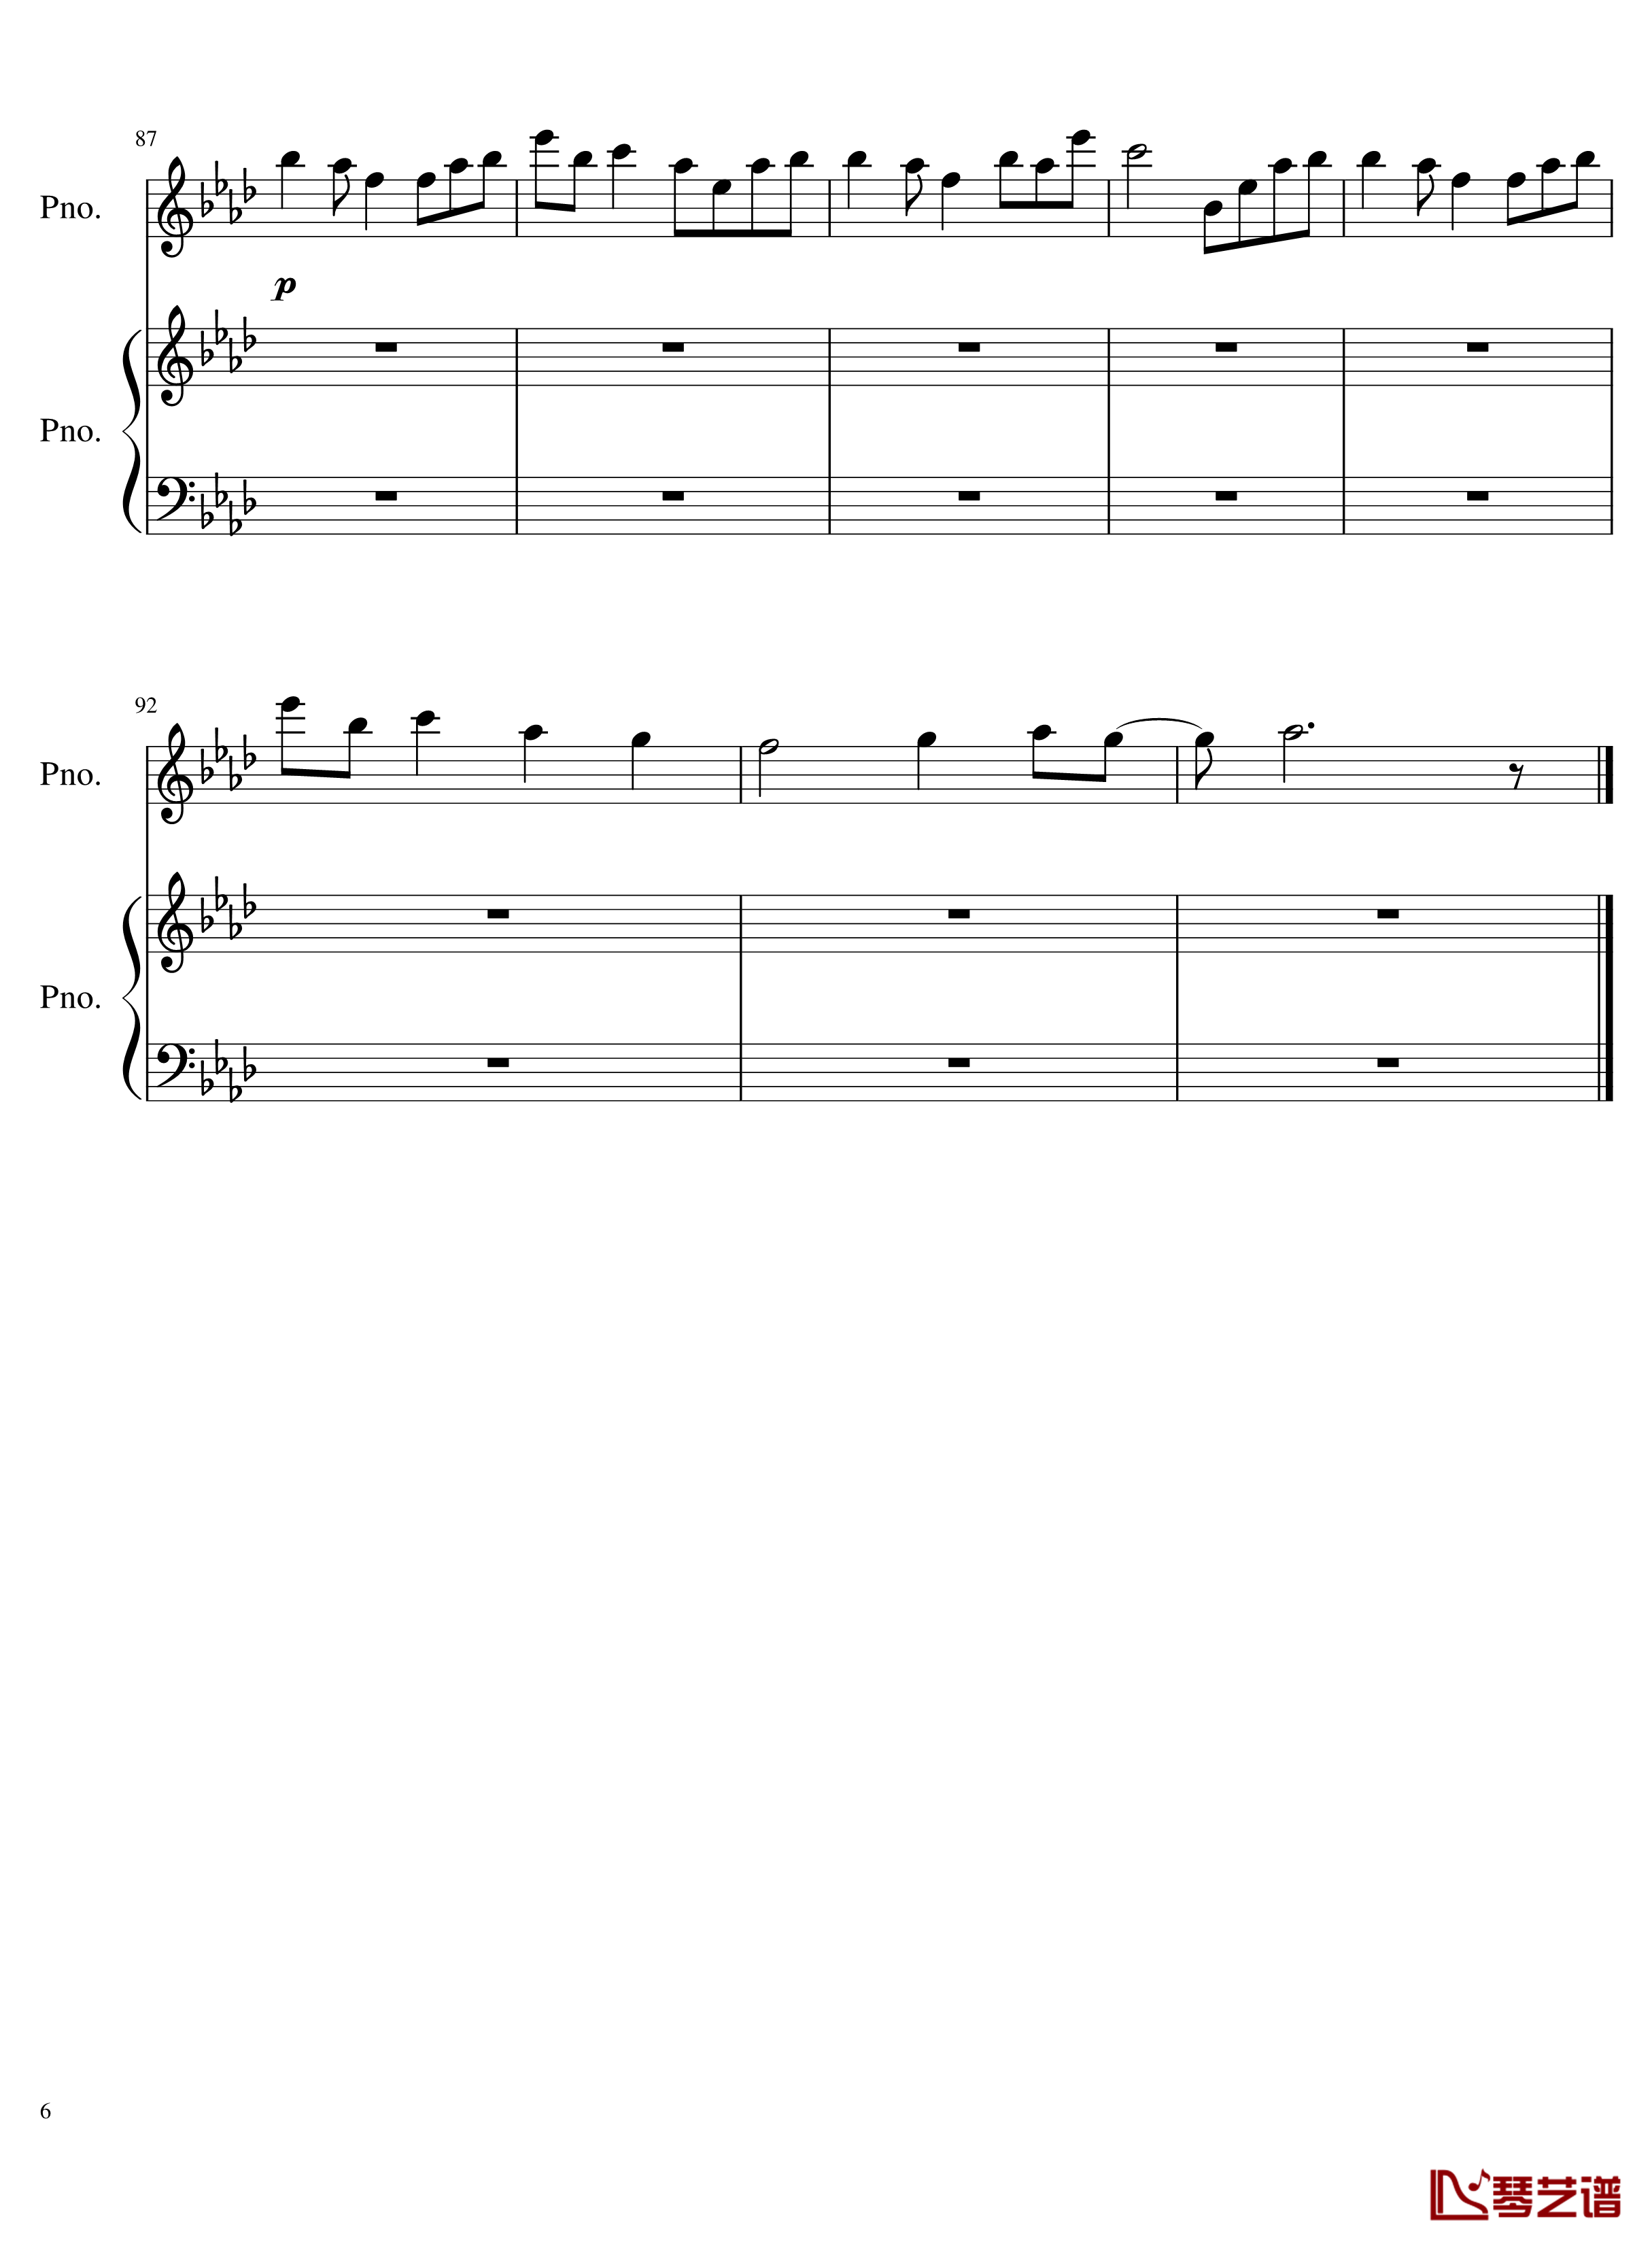 团子大家族钢琴谱-重制版 - Clannad OST-Clannad